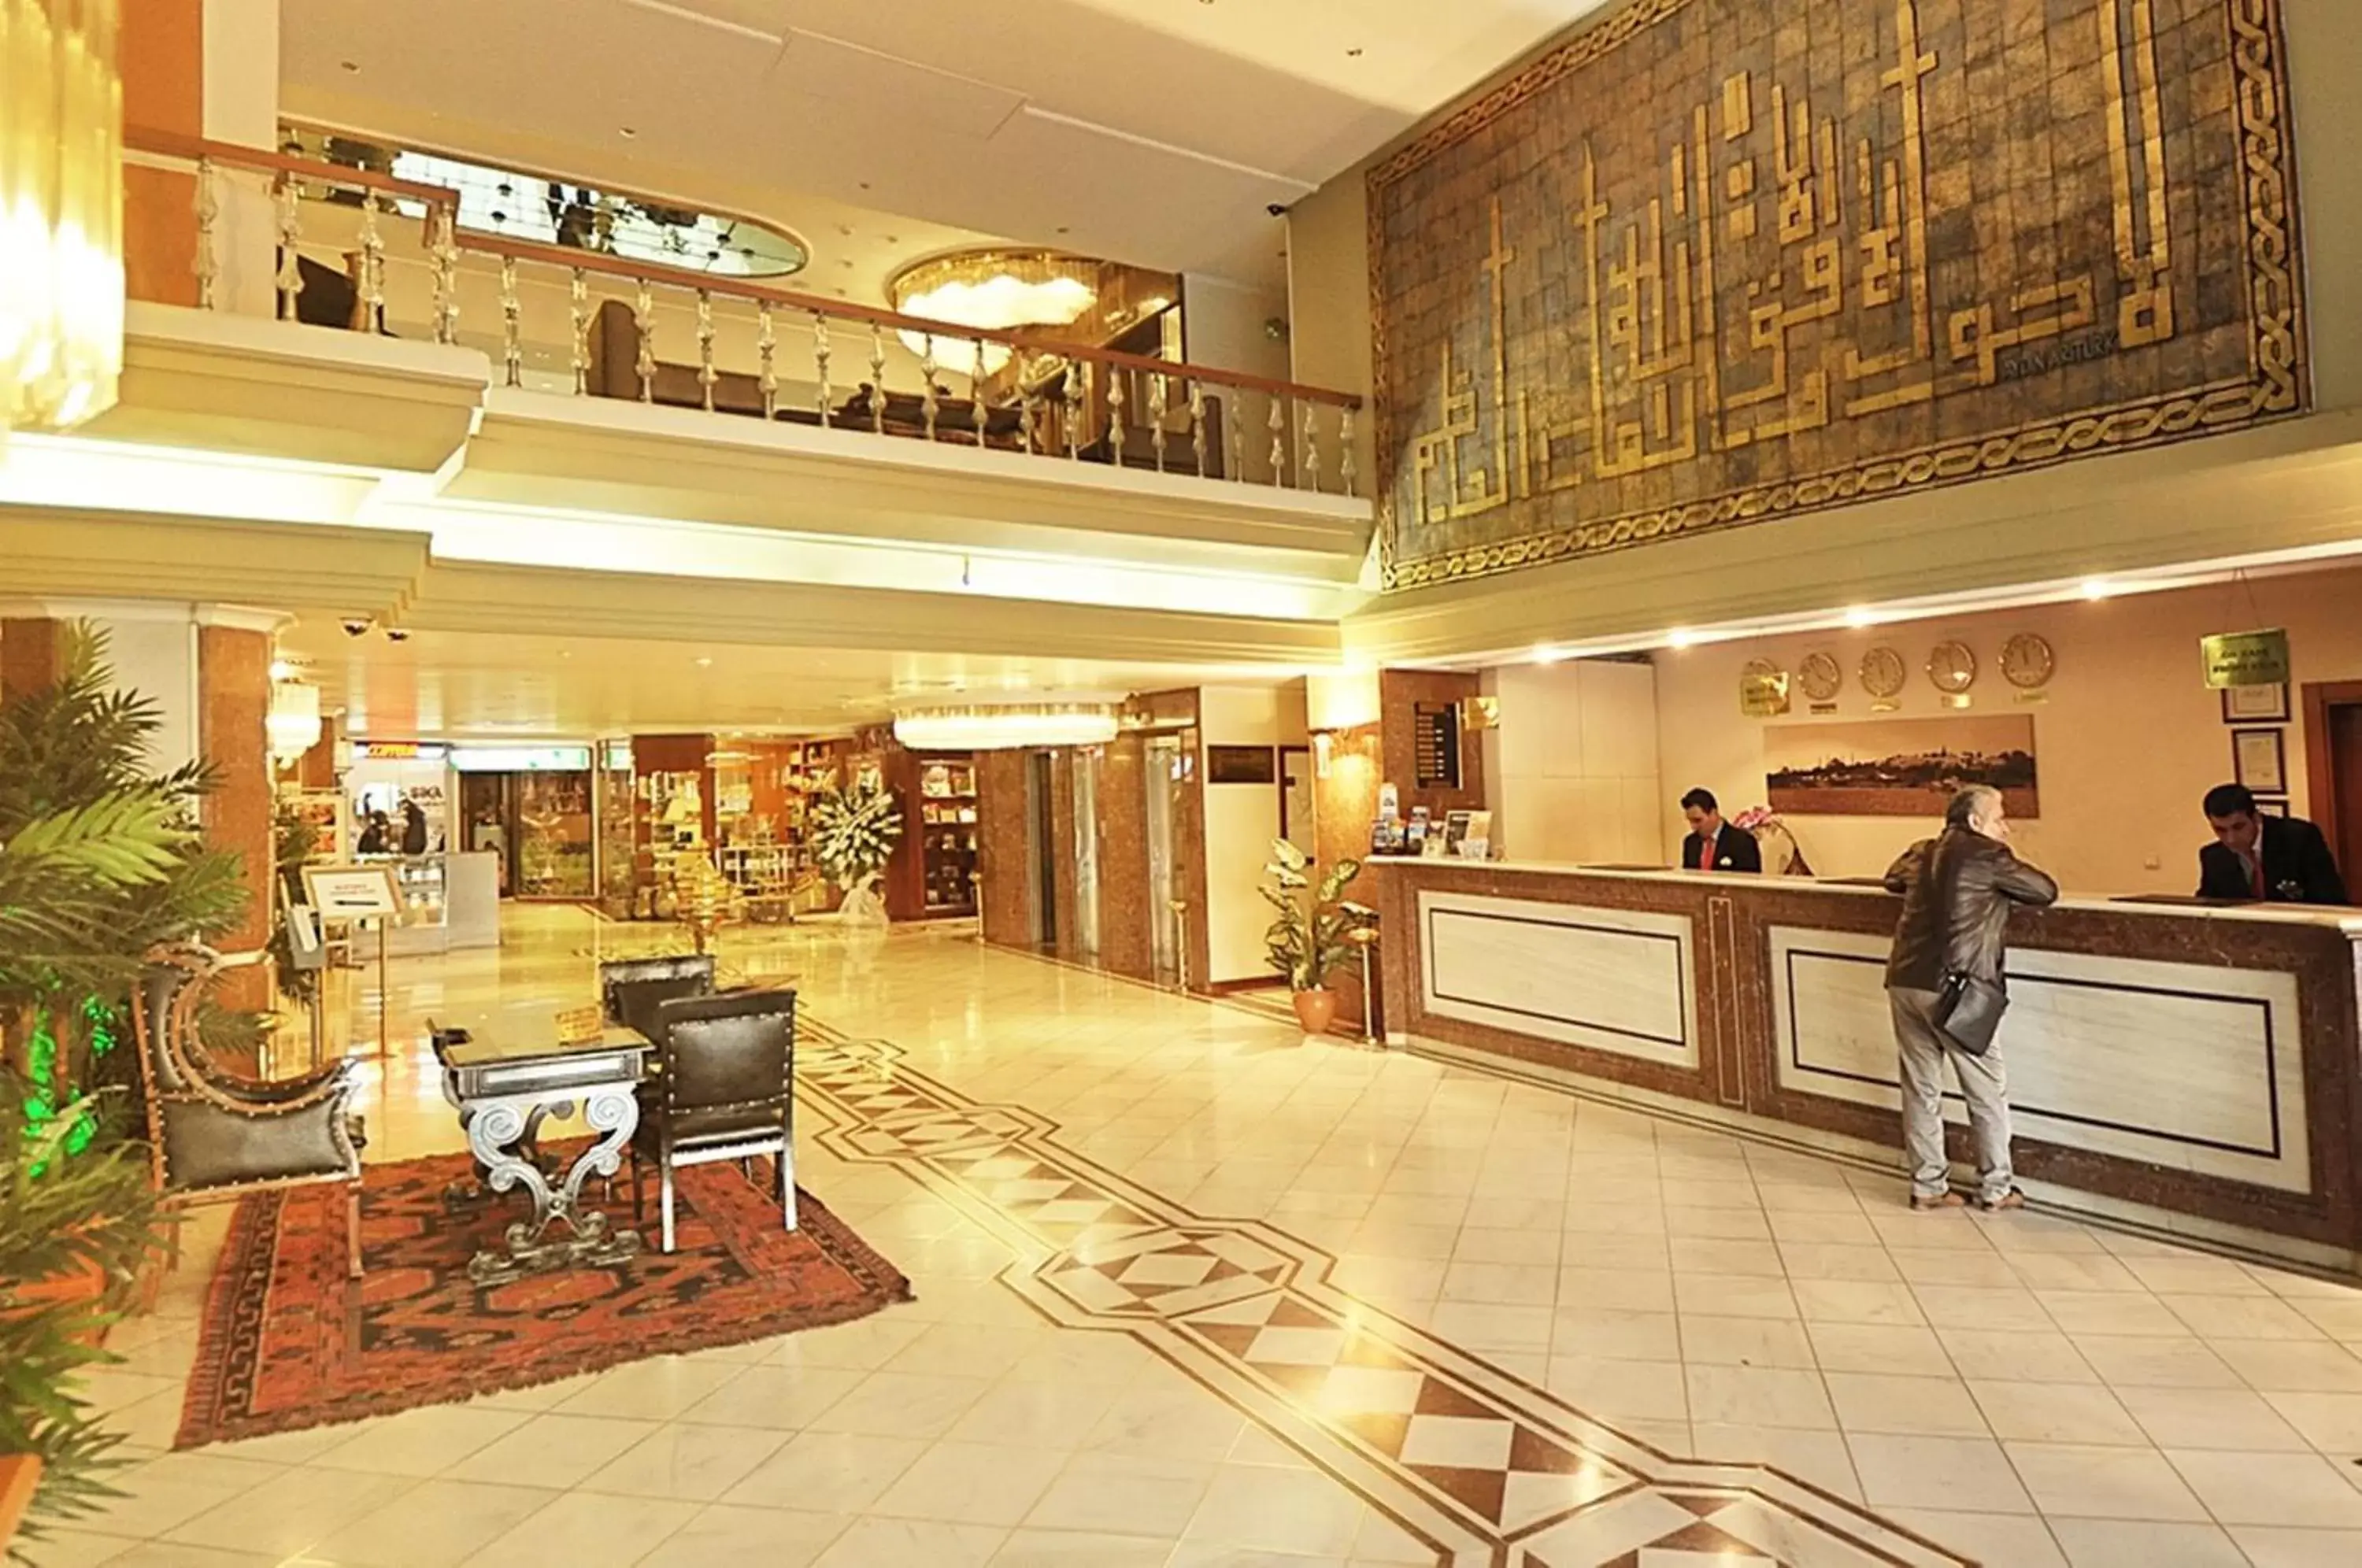 Lobby or reception, Lobby/Reception in Akgun Istanbul Hotel